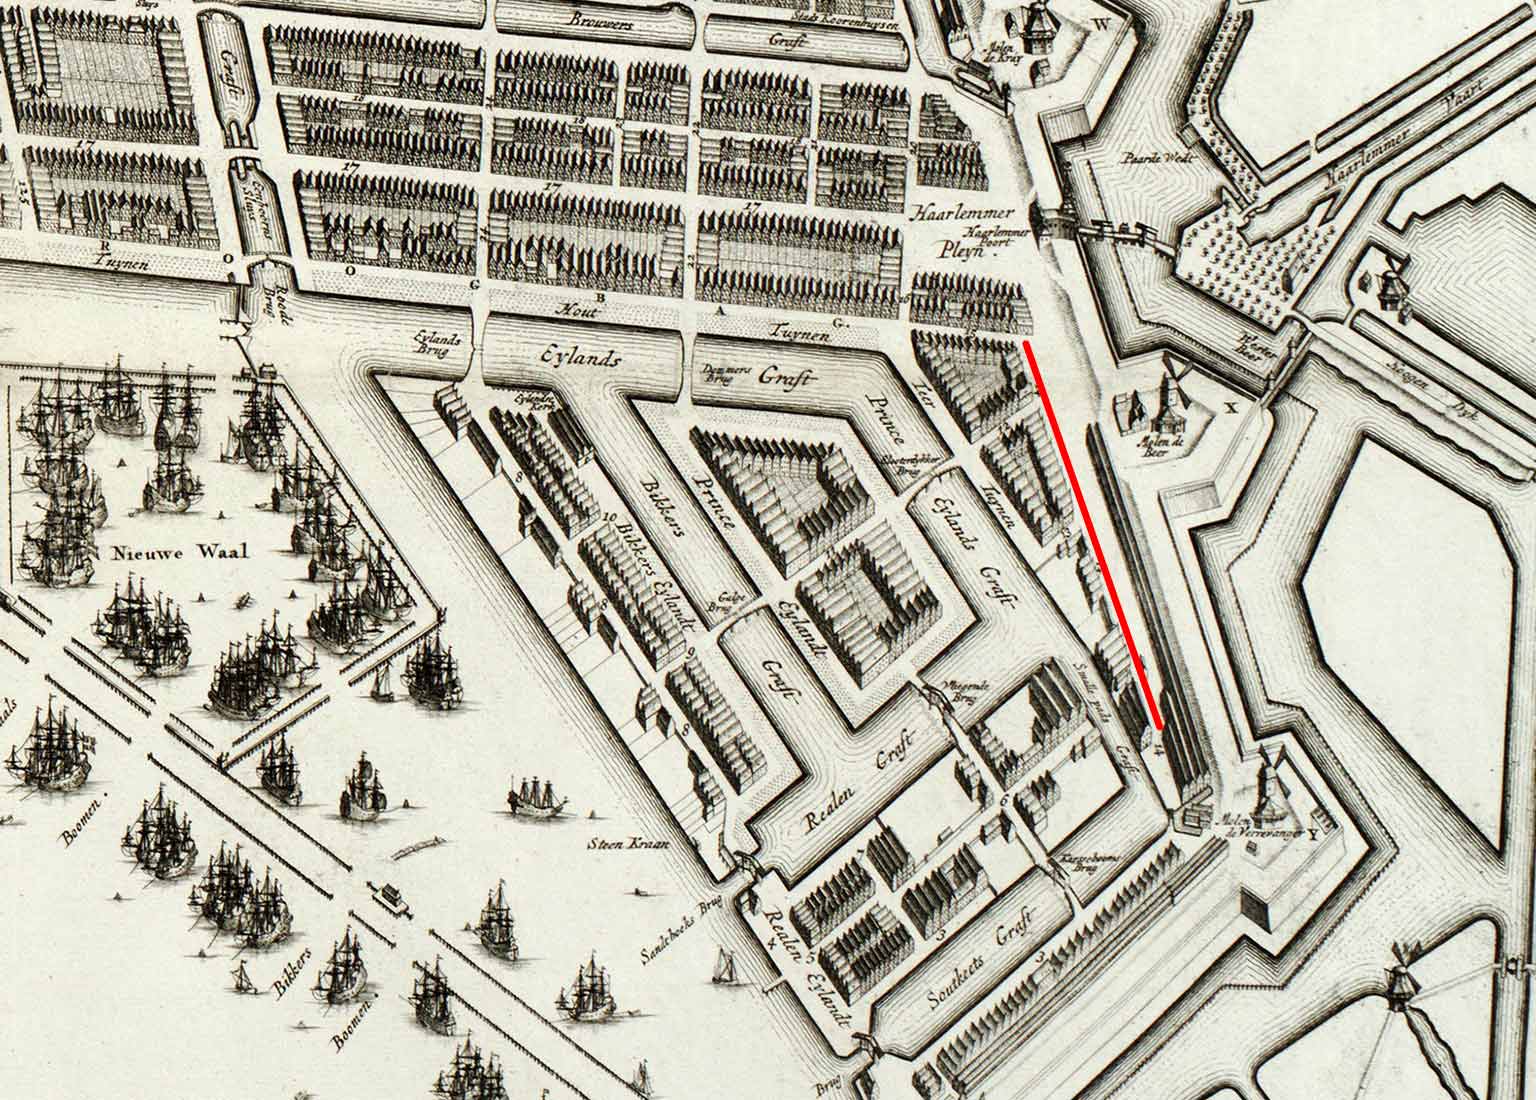 Het vroegere Smallepad (huidige Planciusstraat), Amsterdam, detail van een kaart uit 1737